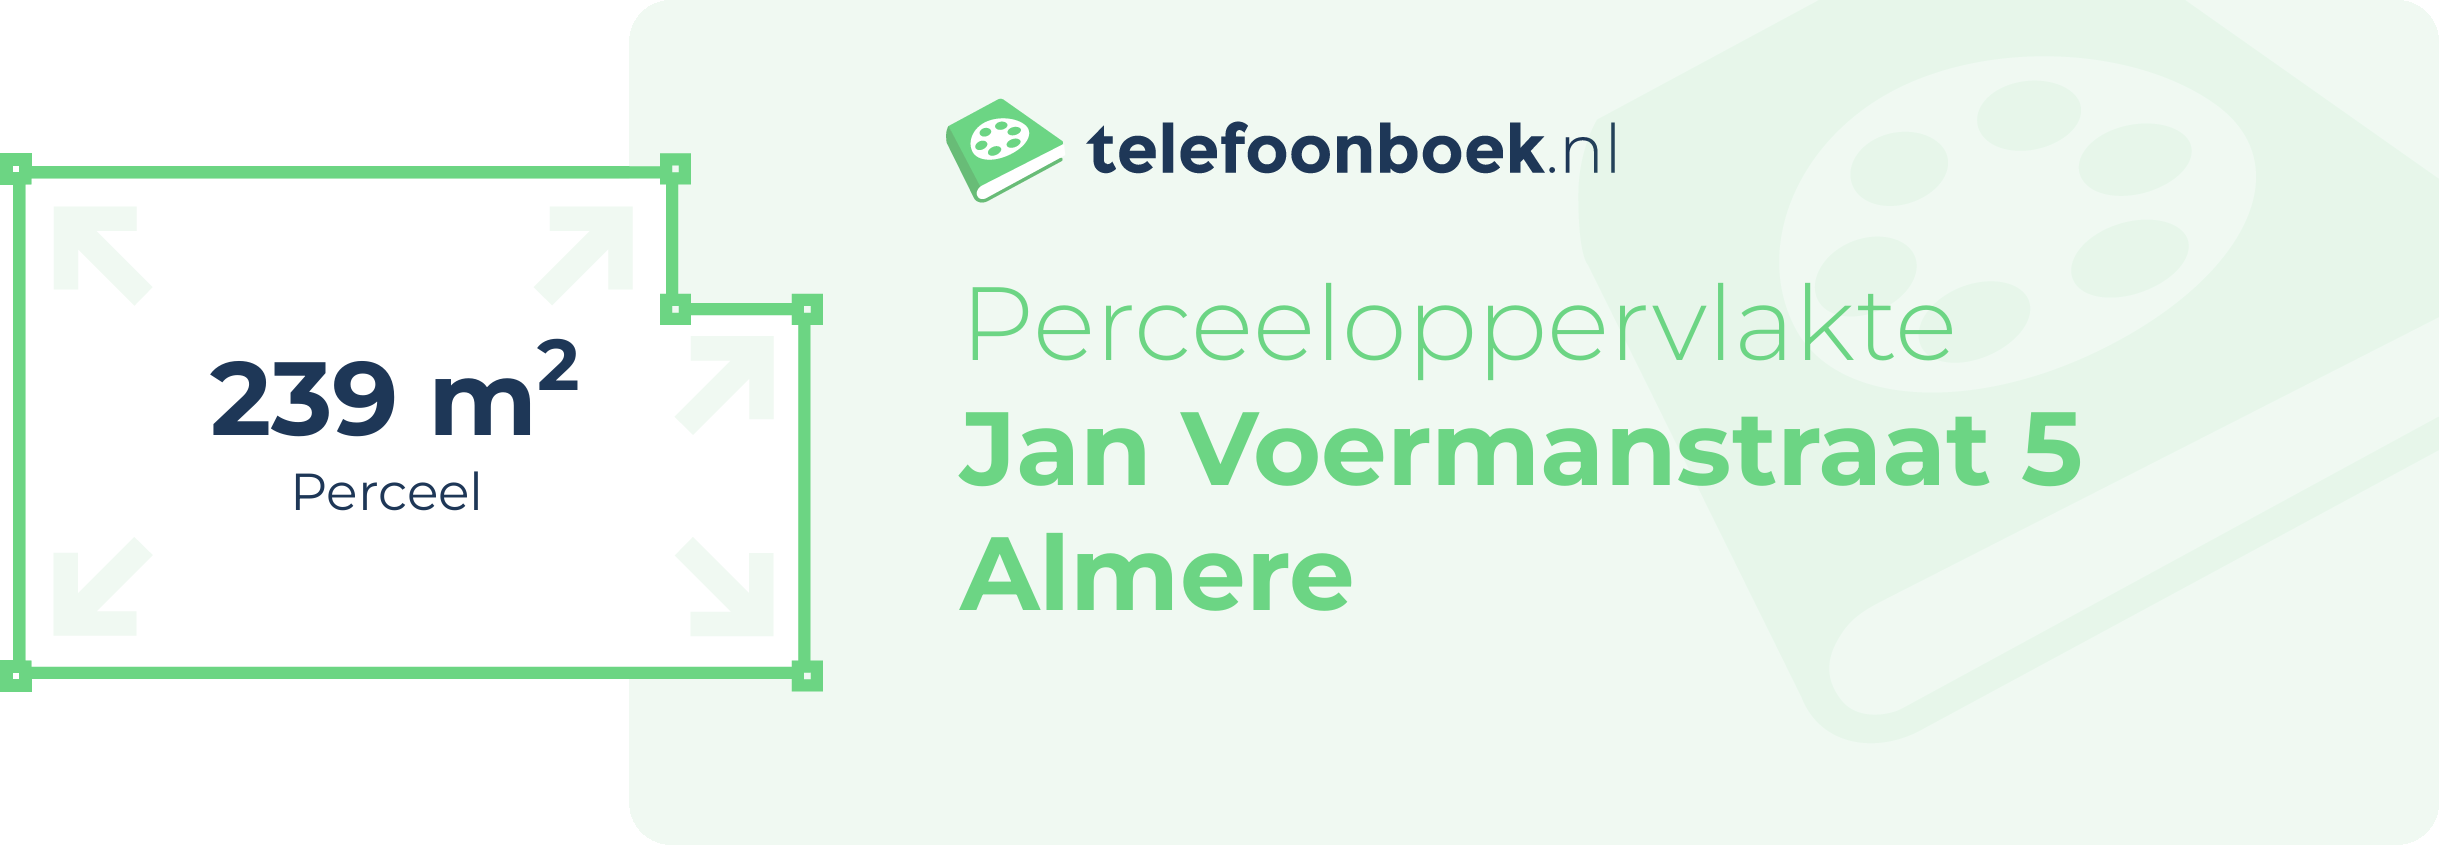 Perceeloppervlakte Jan Voermanstraat 5 Almere